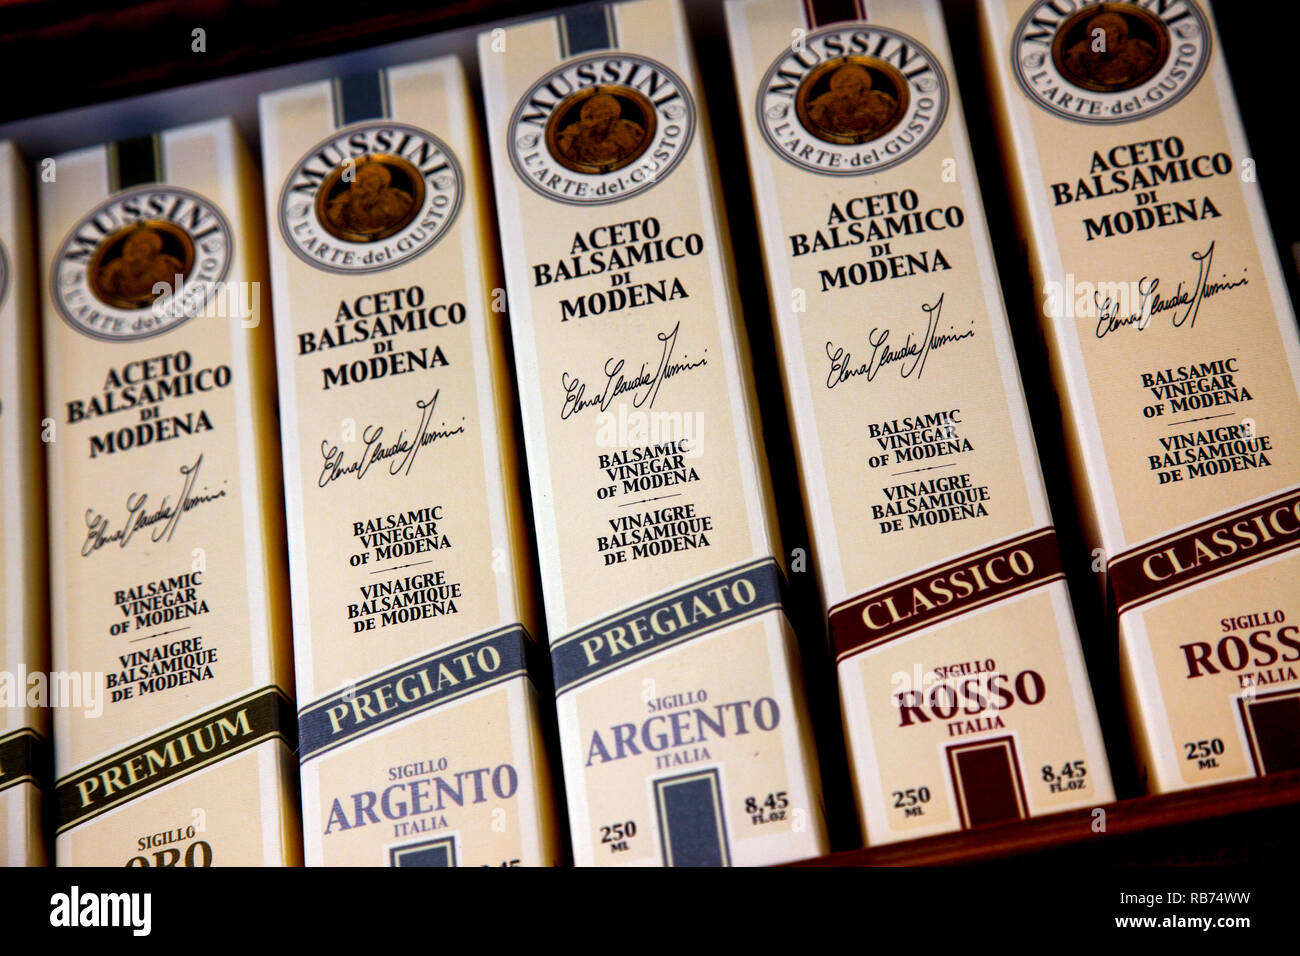 Bottles of balsamic vinegar in Modena Italy. Stock Photo